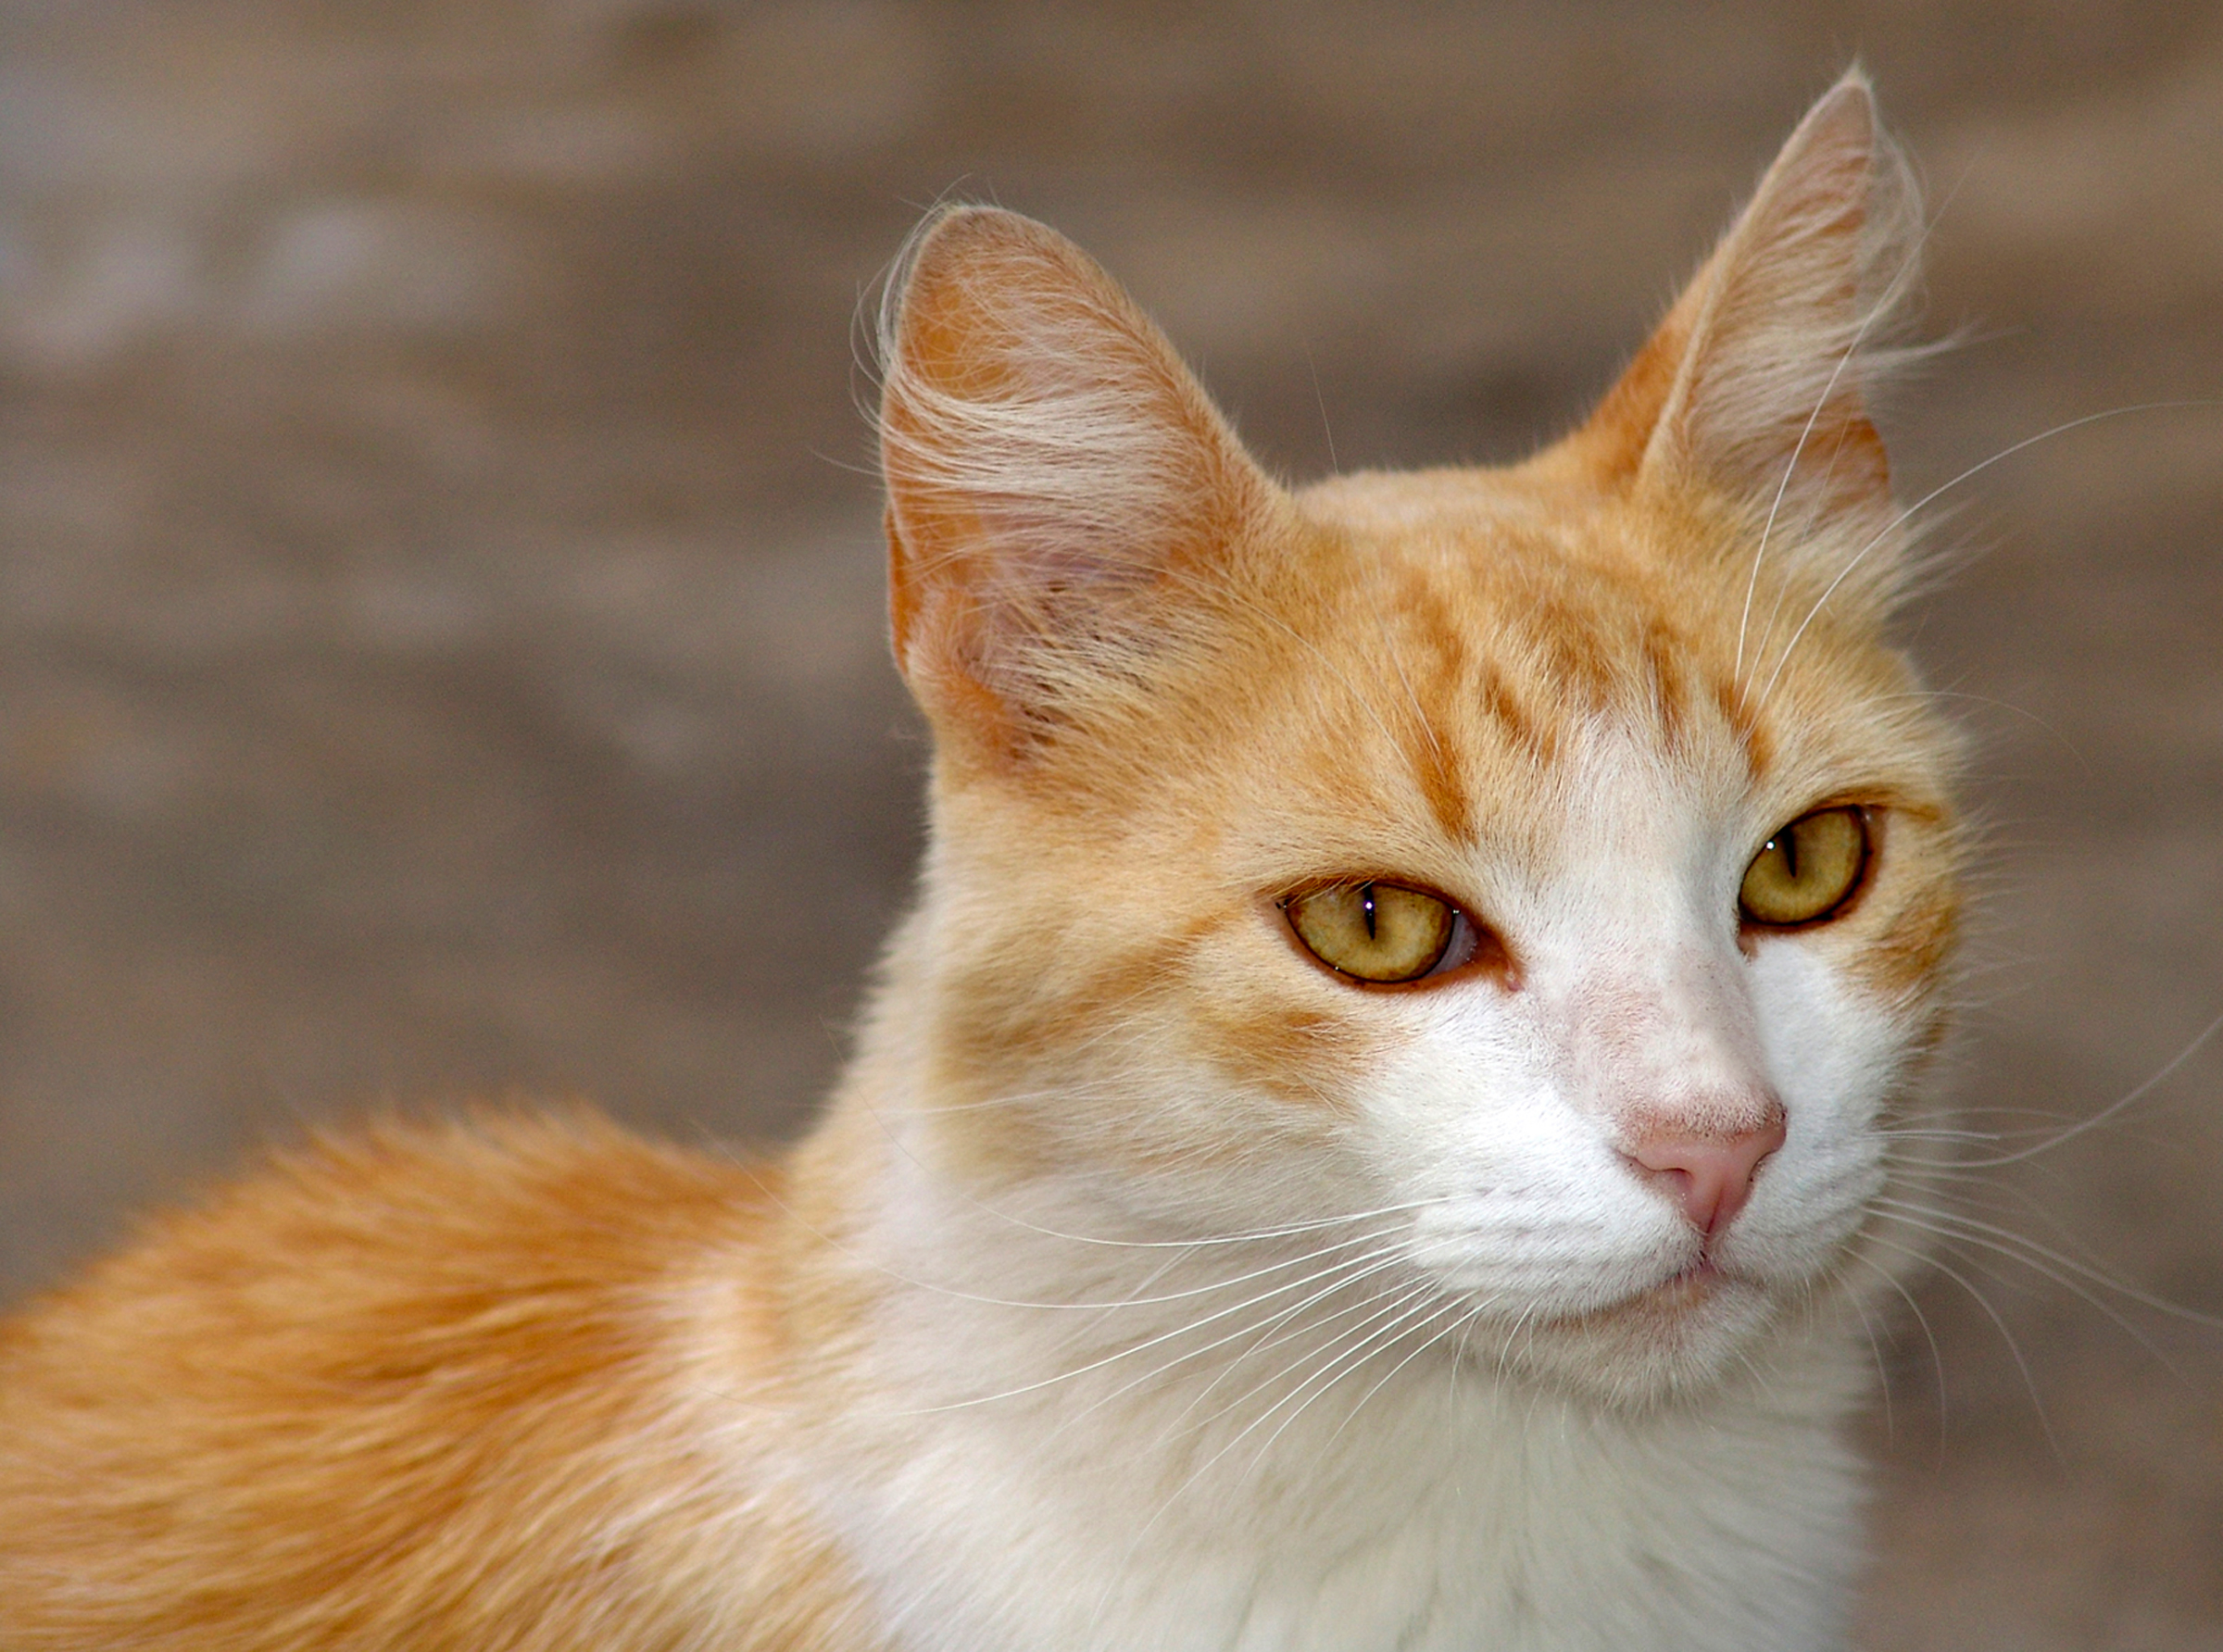 1. Descubra as raças de gato que vivem mais e aproveite sua companhia por muitos anos